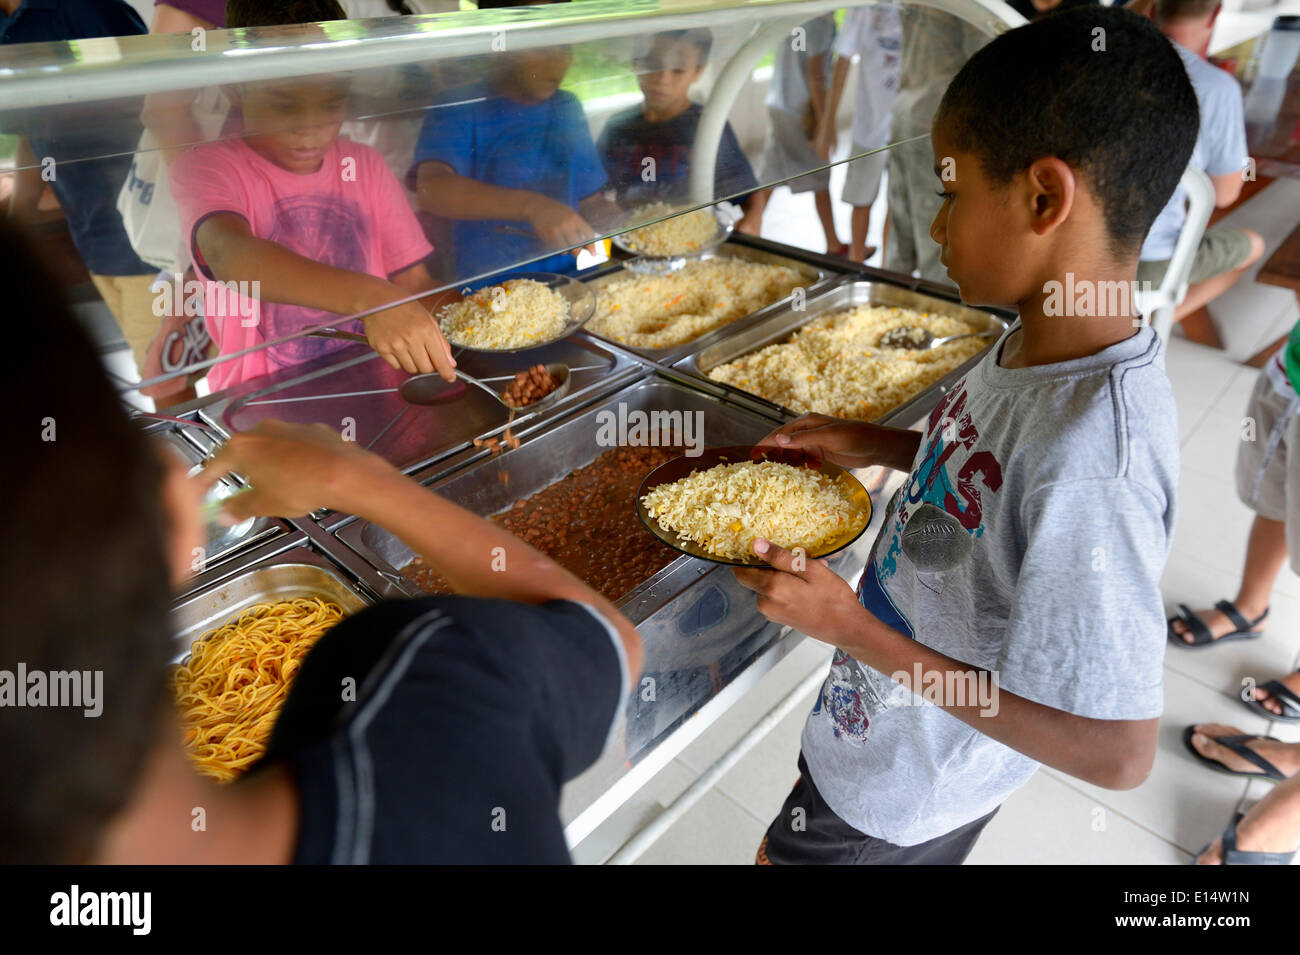 Ragazzi brasiliani presso il banco alimentare in un progetto sociale per i bambini di strada, Maranguape, Ceará, Brasile Foto Stock